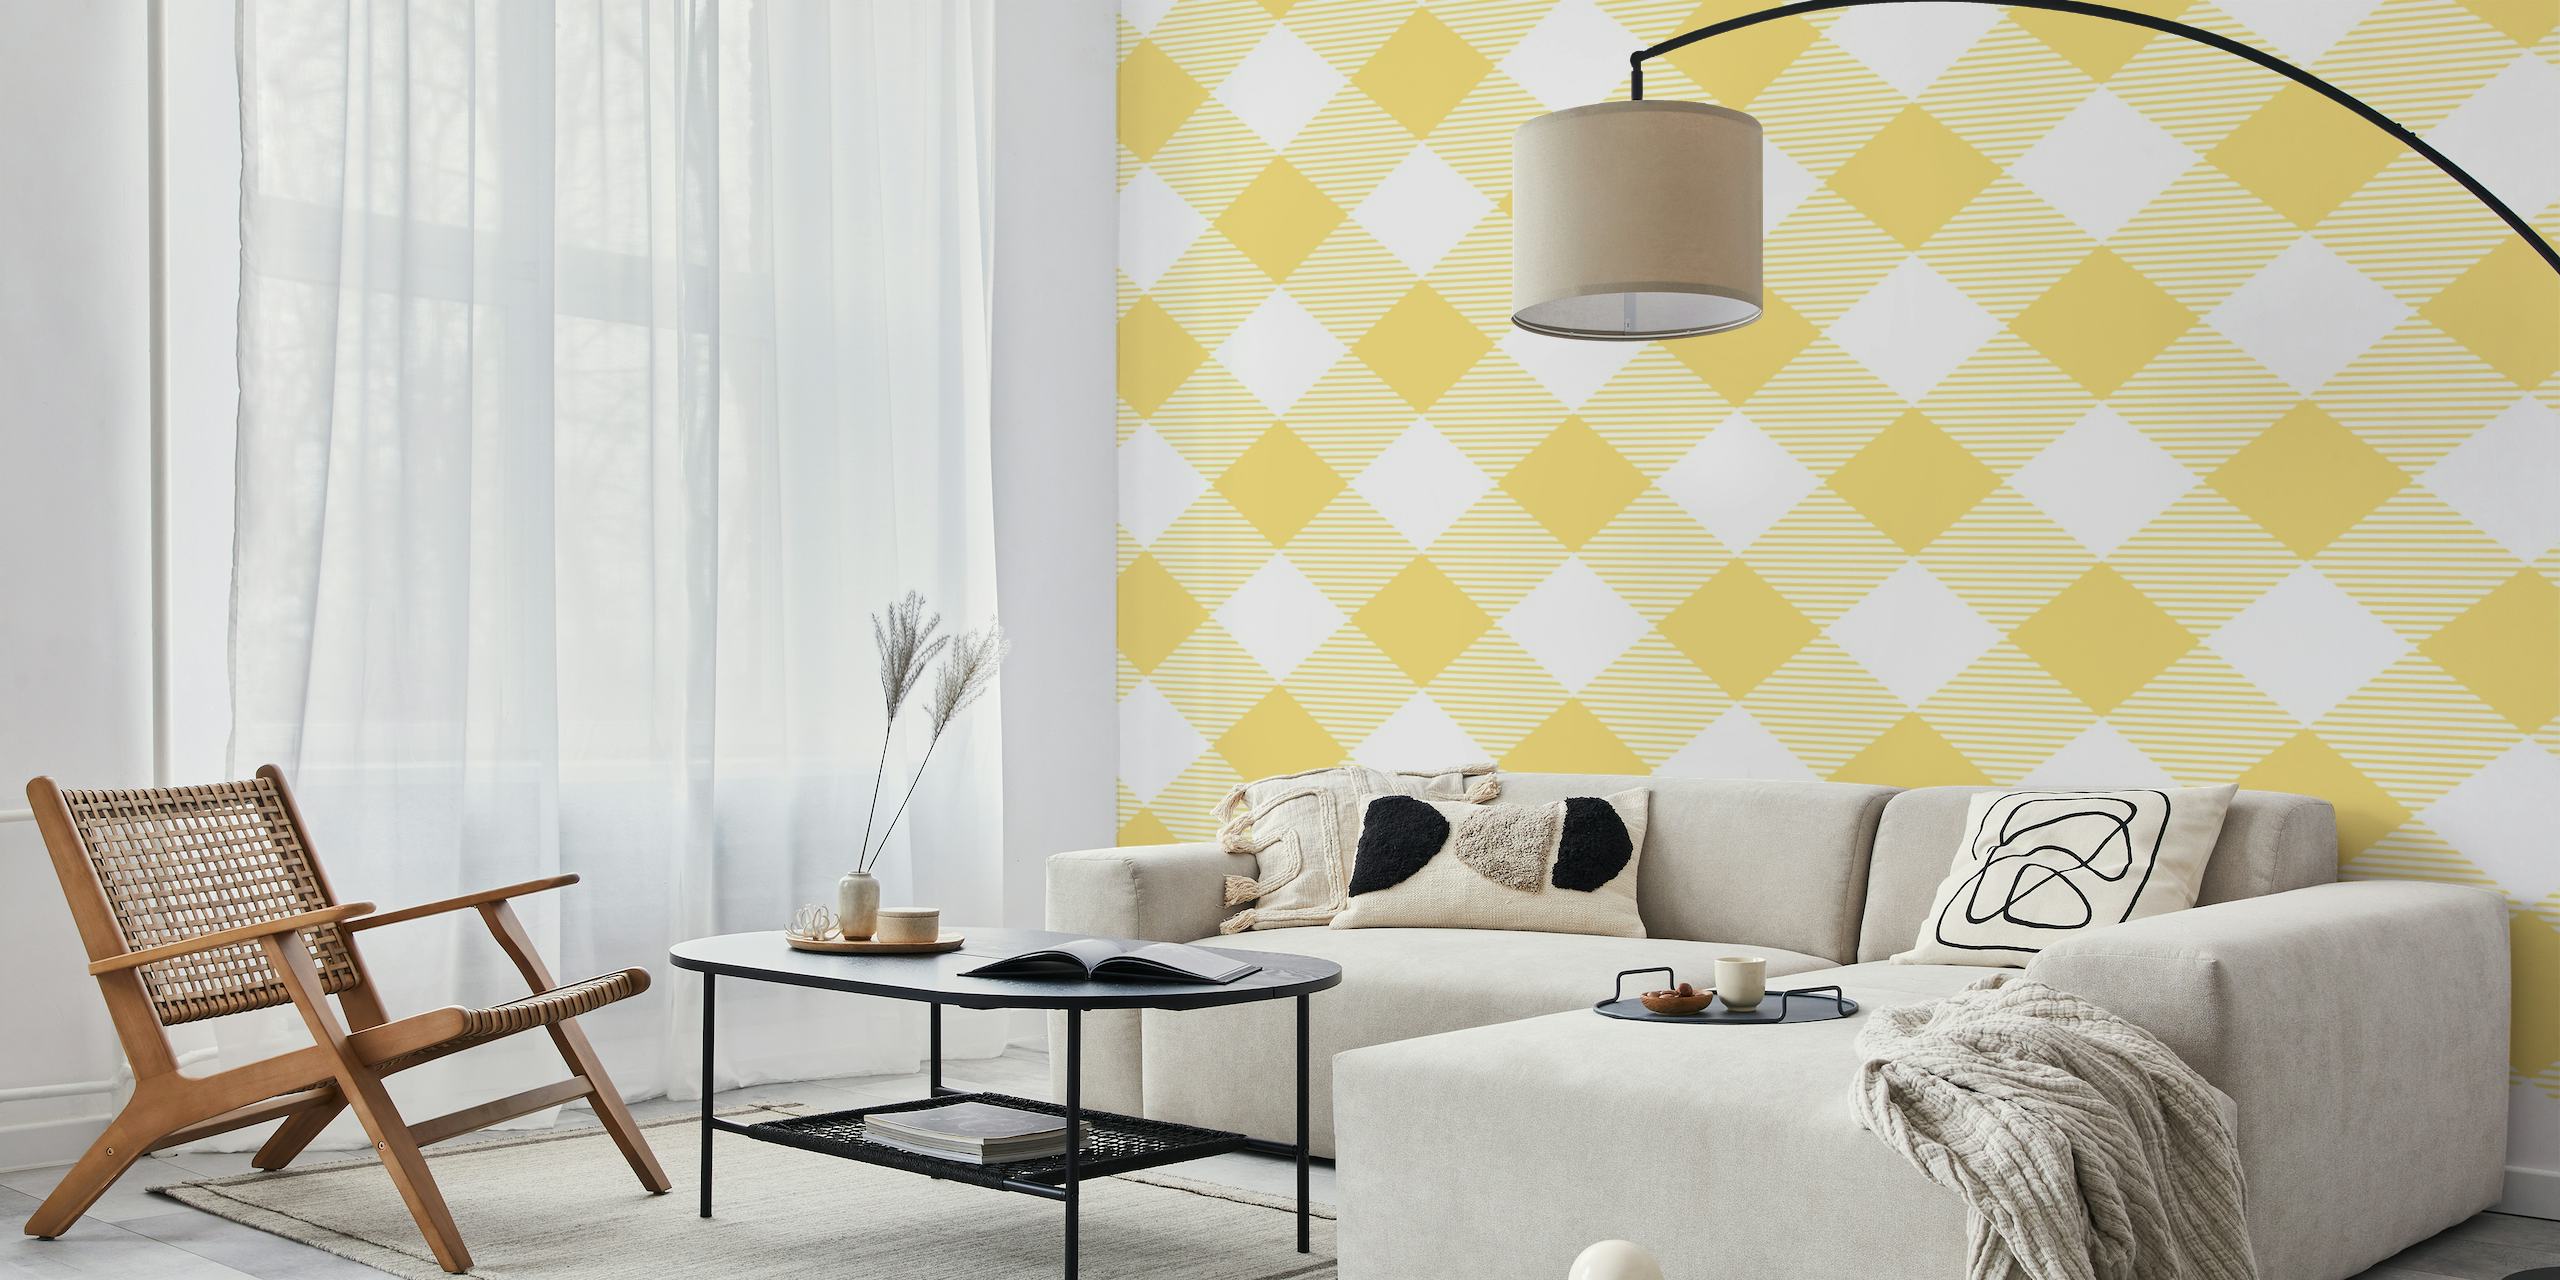 Saffron yellow checked pattern wallpaper